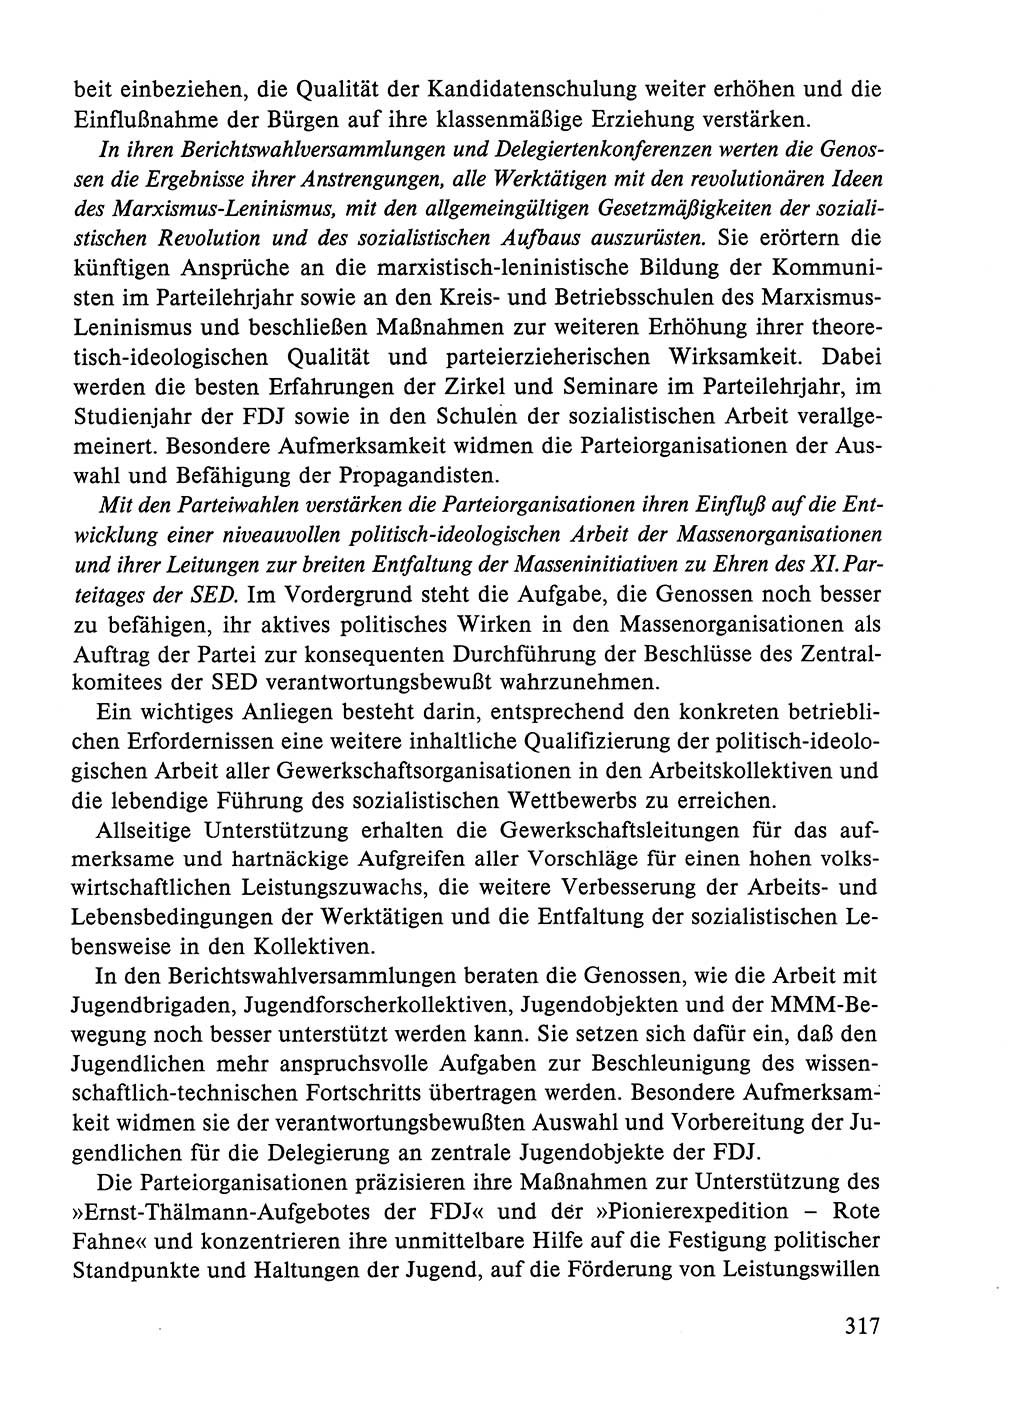 Dokumente der Sozialistischen Einheitspartei Deutschlands (SED) [Deutsche Demokratische Republik (DDR)] 1984-1985, Seite 110 (Dok. SED DDR 1984-1985, S. 110)